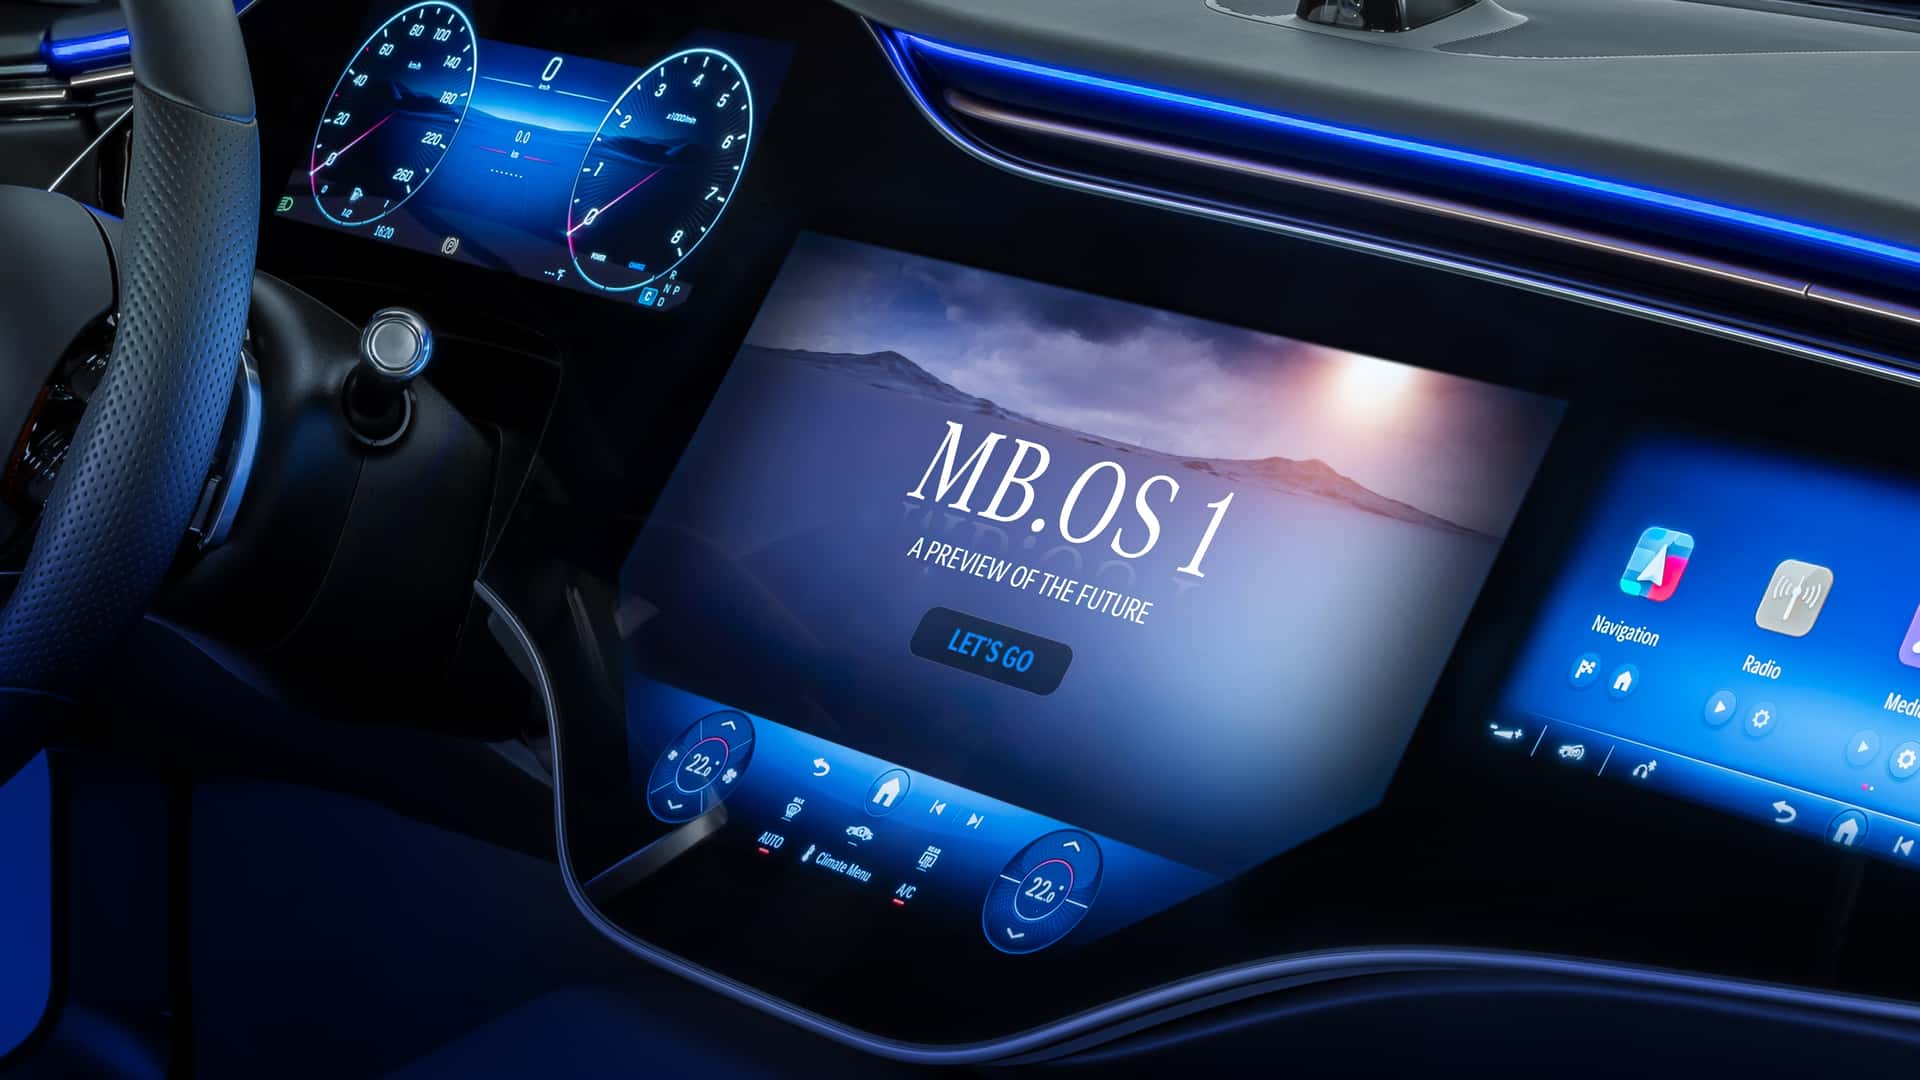 مرسيدس تكشف عن الجيل الجديد من نظام التشغيل لسياراتها بتقنيات مبتكرة جديدة 1